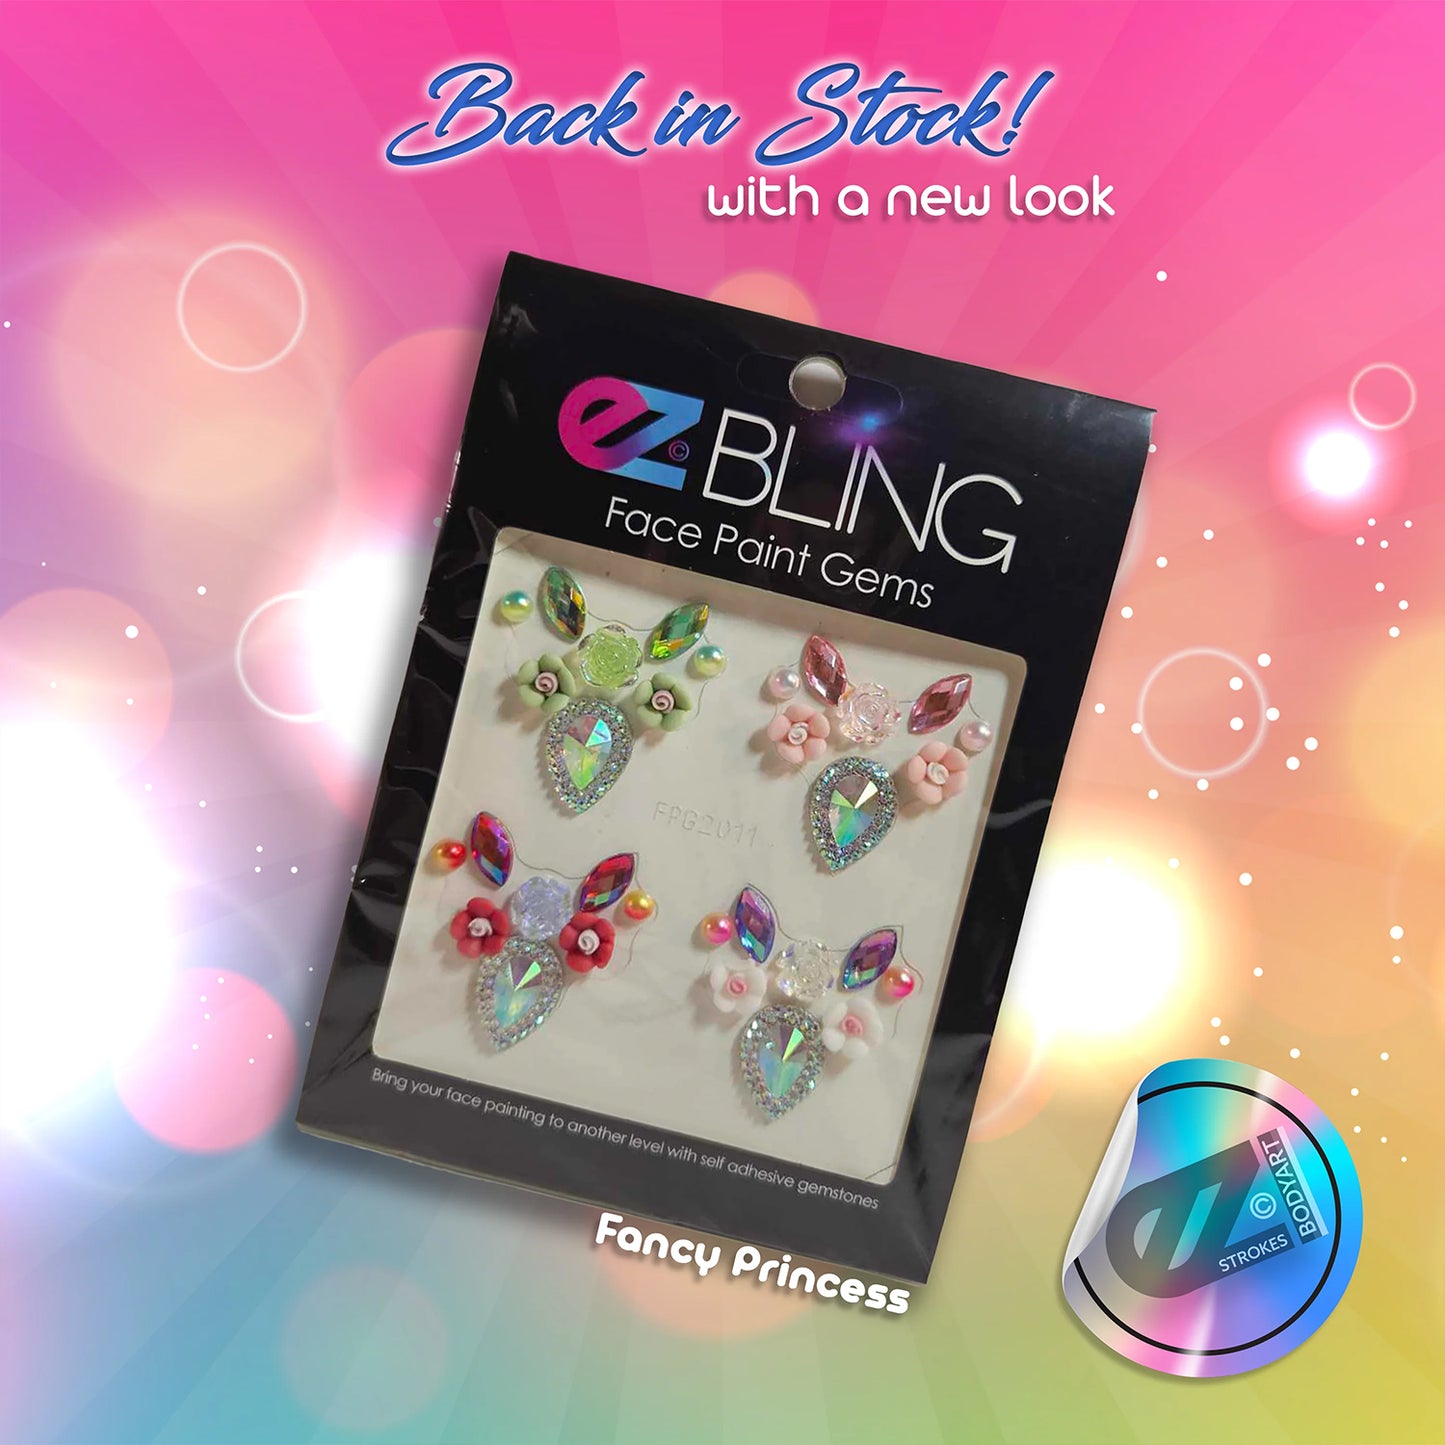 EZ Bling Face Paint Gems - Fancy Princess (4 Pieces)